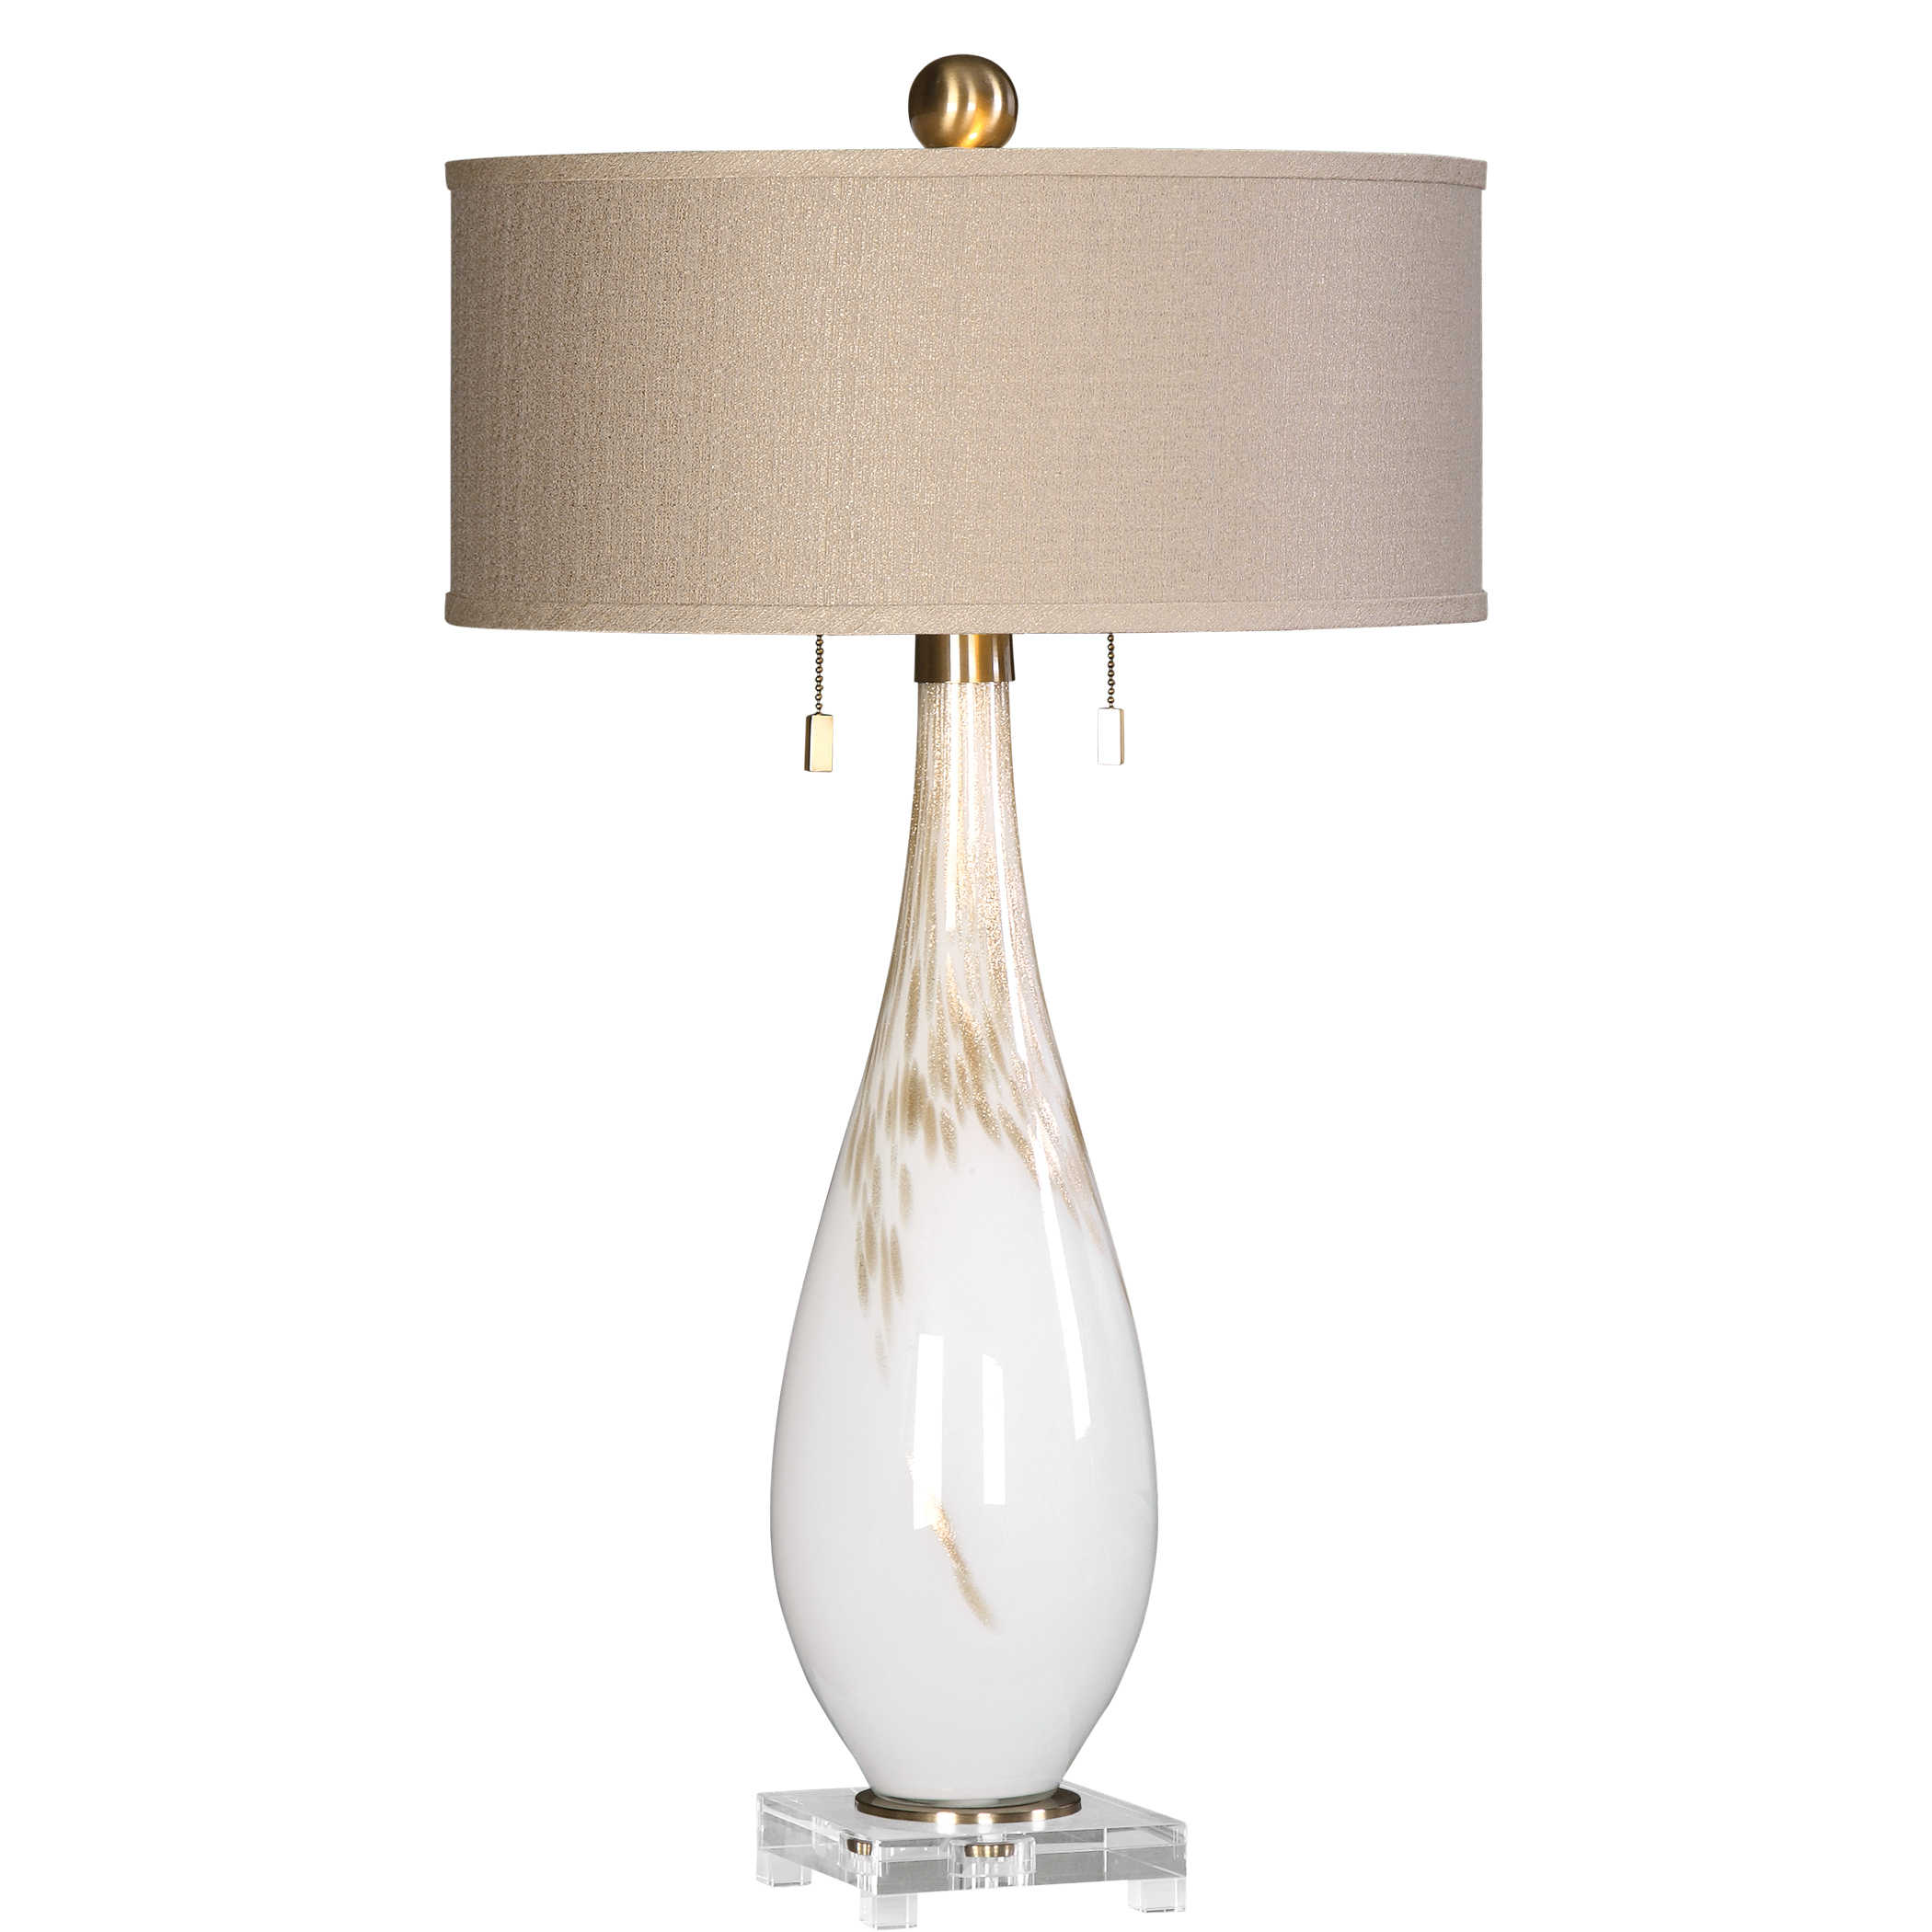 Настольная лампа CARDONI TABLE LAMP 27201 Uttermost США